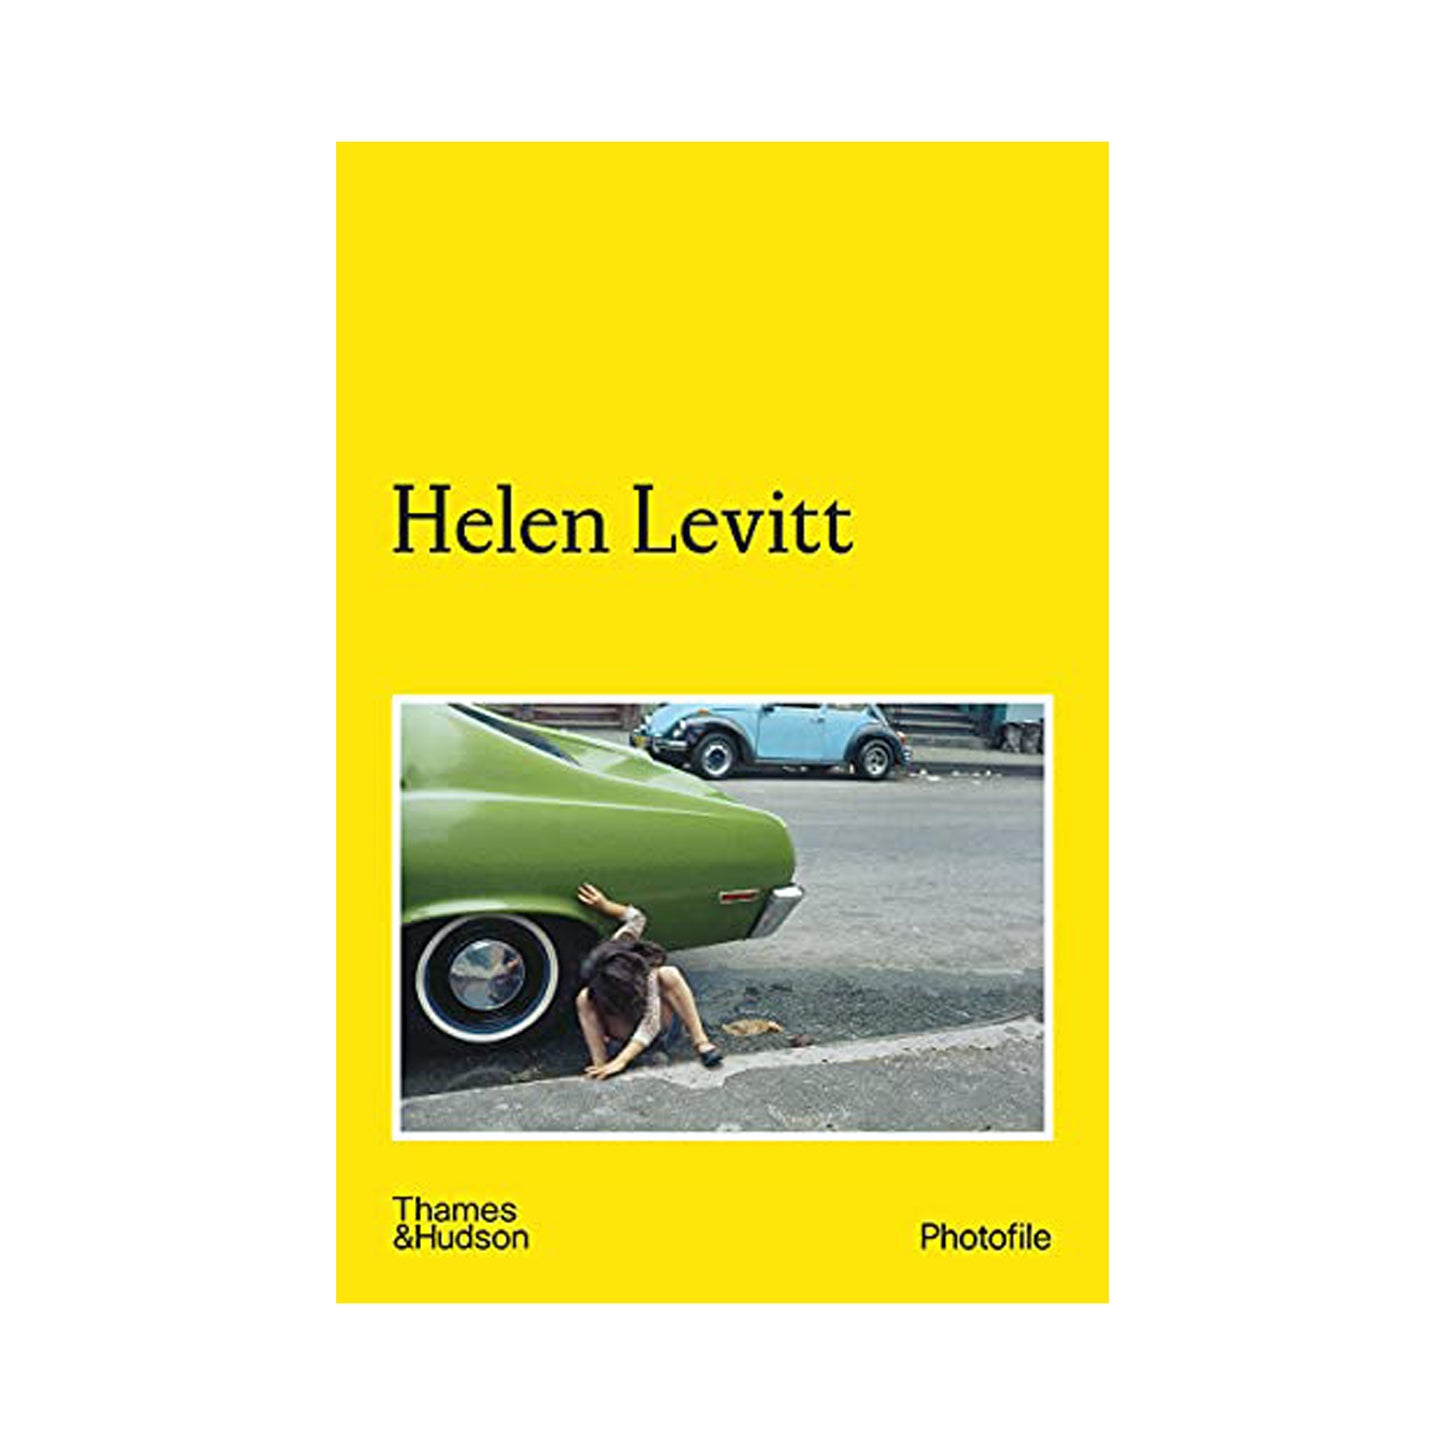 Helen Levitt Photofile by Jean-François Chevrier